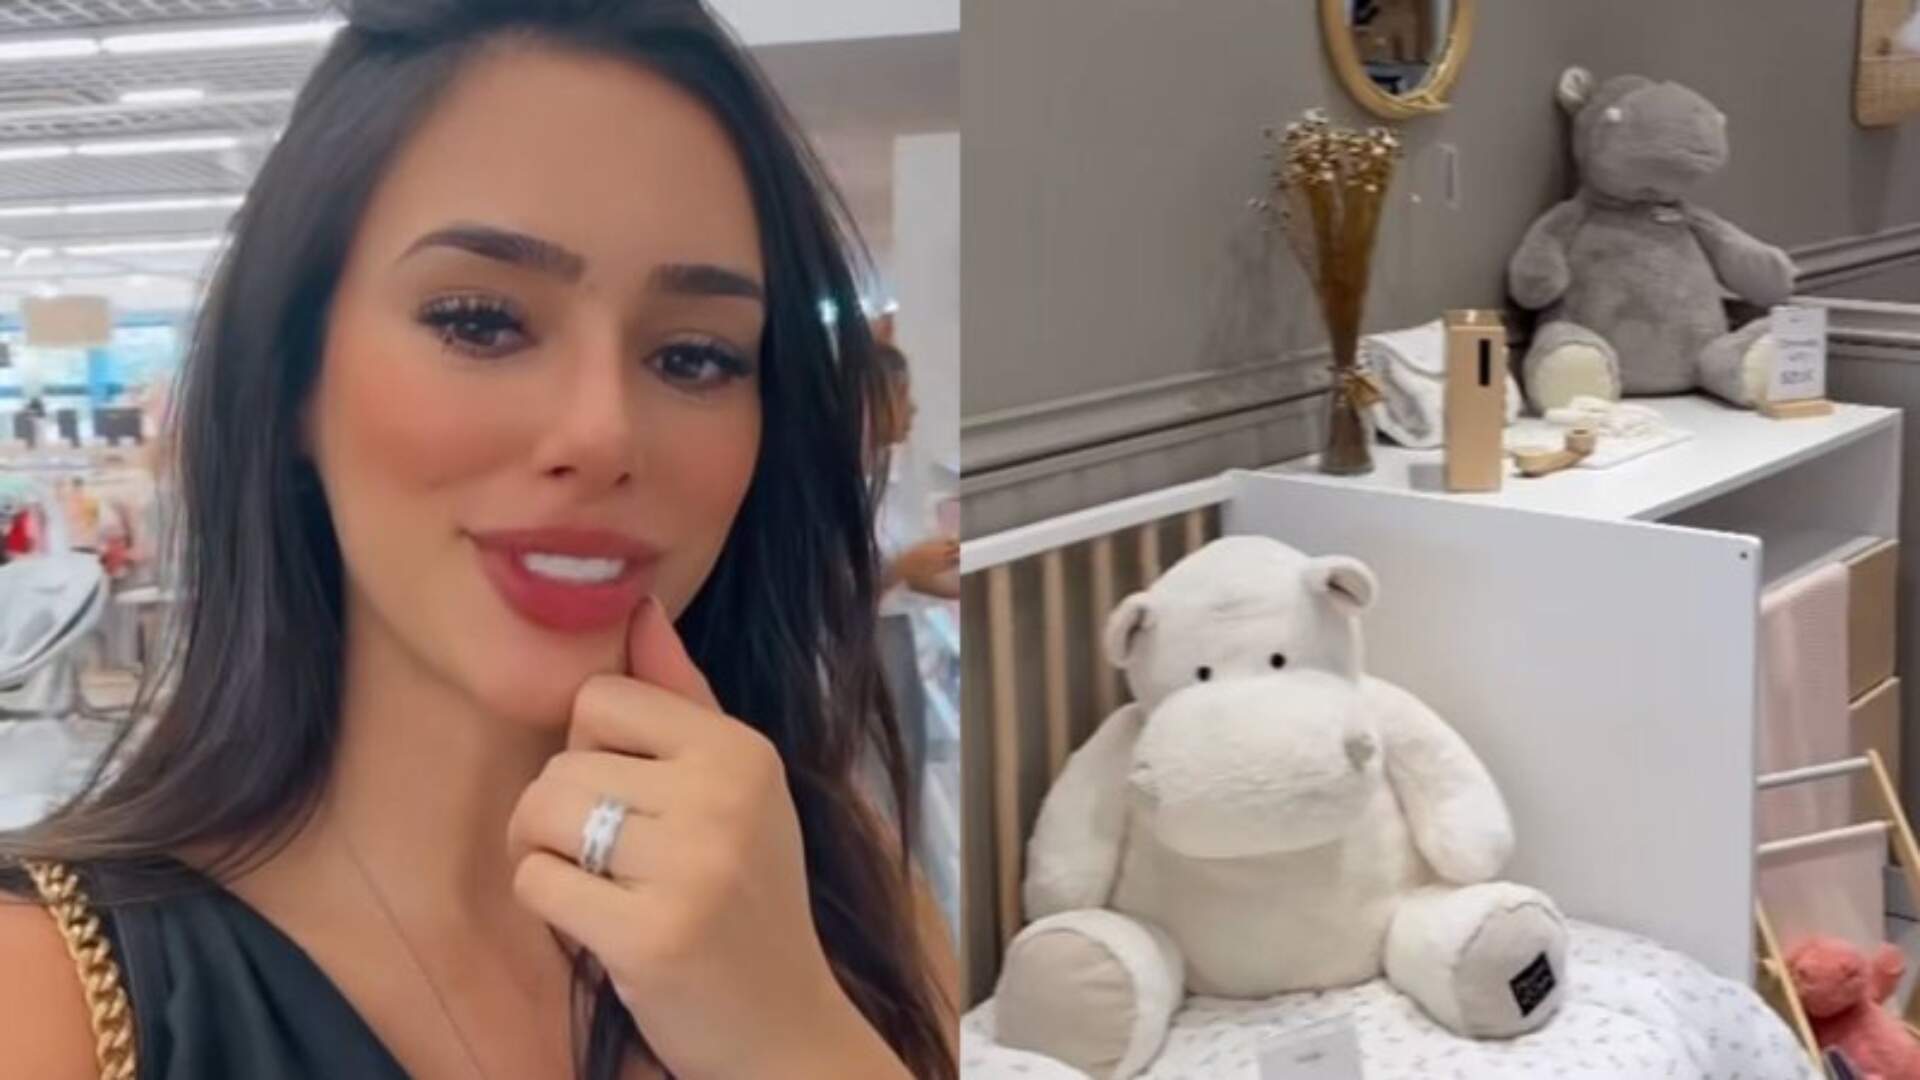 De mudança para Arábia Saudita ao lado de Neymar, Bruna Biancardi compartilha enxoval luxuoso da filha